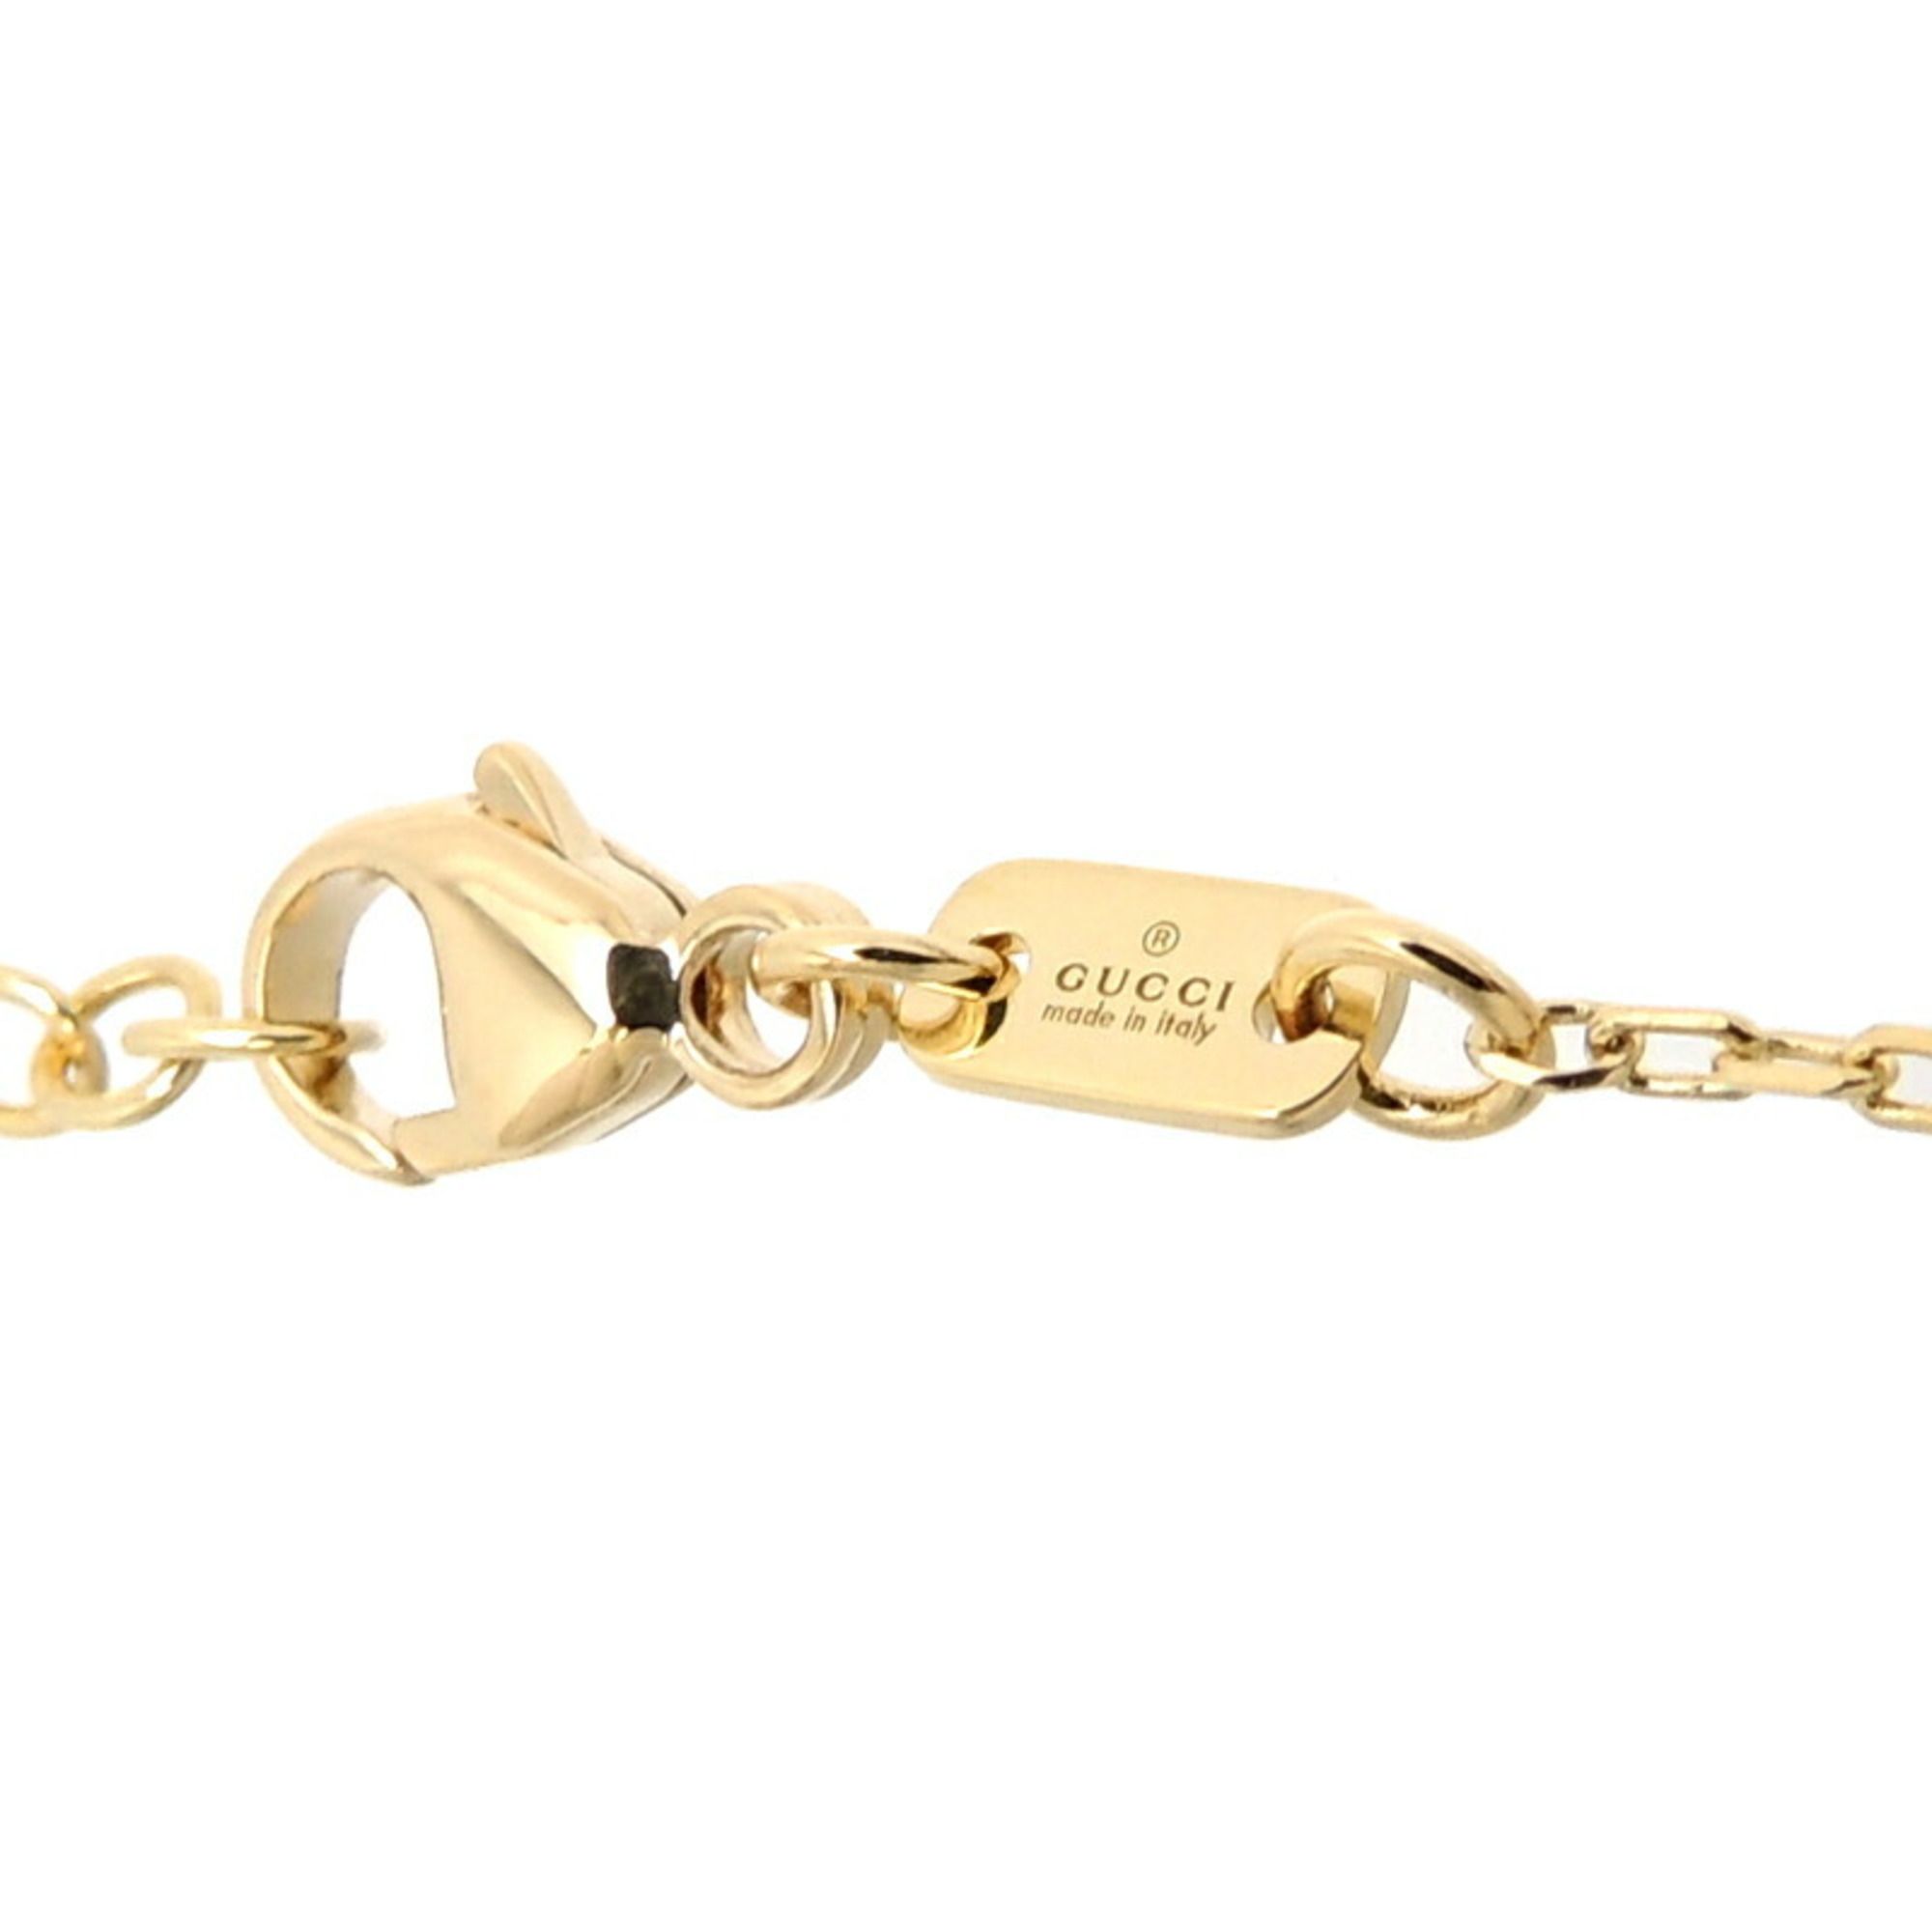 Gucci Le Marche des Merveilles Women's and Men's Necklace 750 Yellow Gold